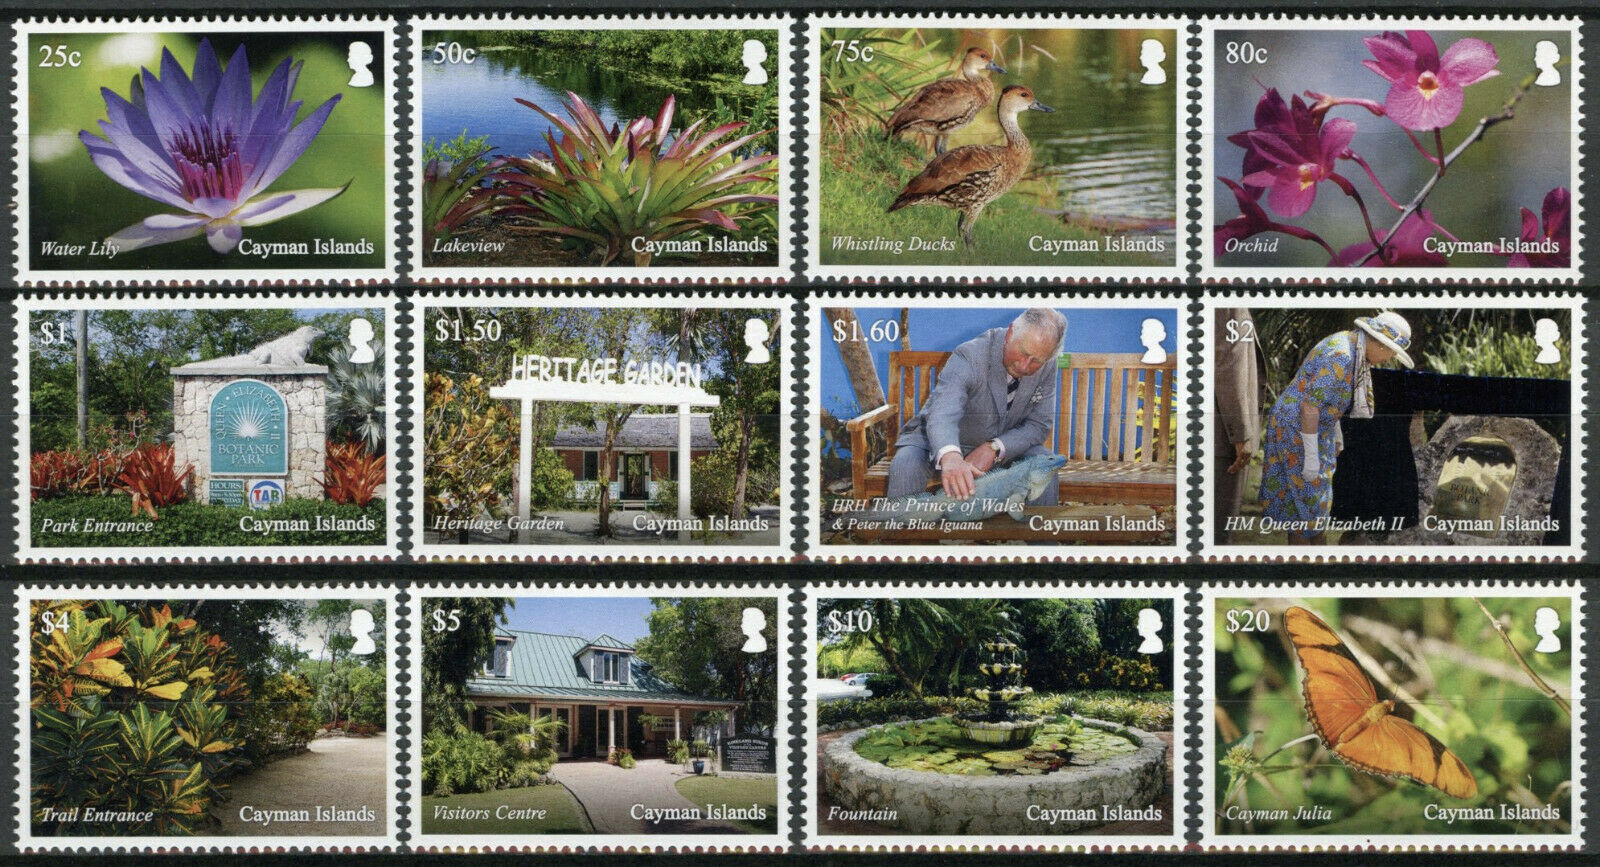 Cayman Islands 2020 MNH Flowers Stamps HM Queen Elizabeth II Botanic Park Landscapes 12v Set